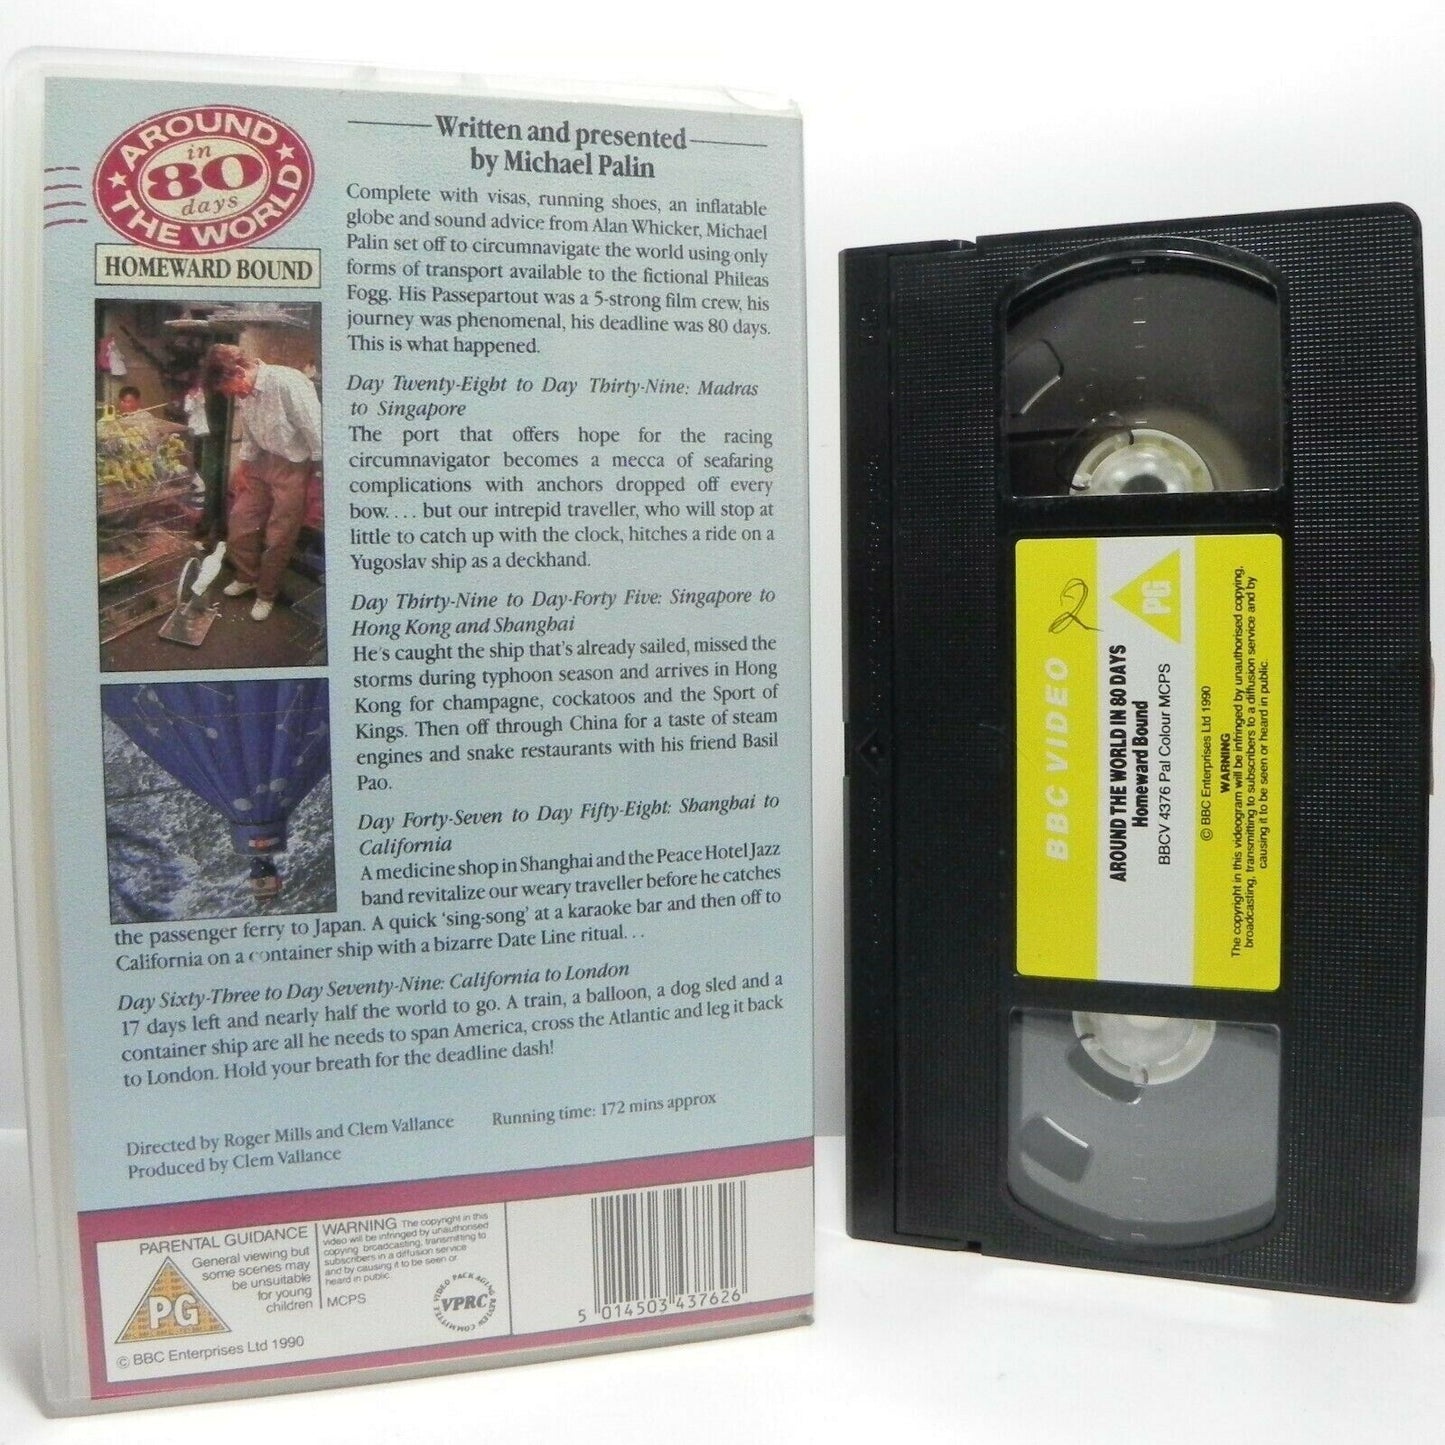 Around The World In 80 Days: By Michael Palin - Homeward Bound - TV Series - VHS-